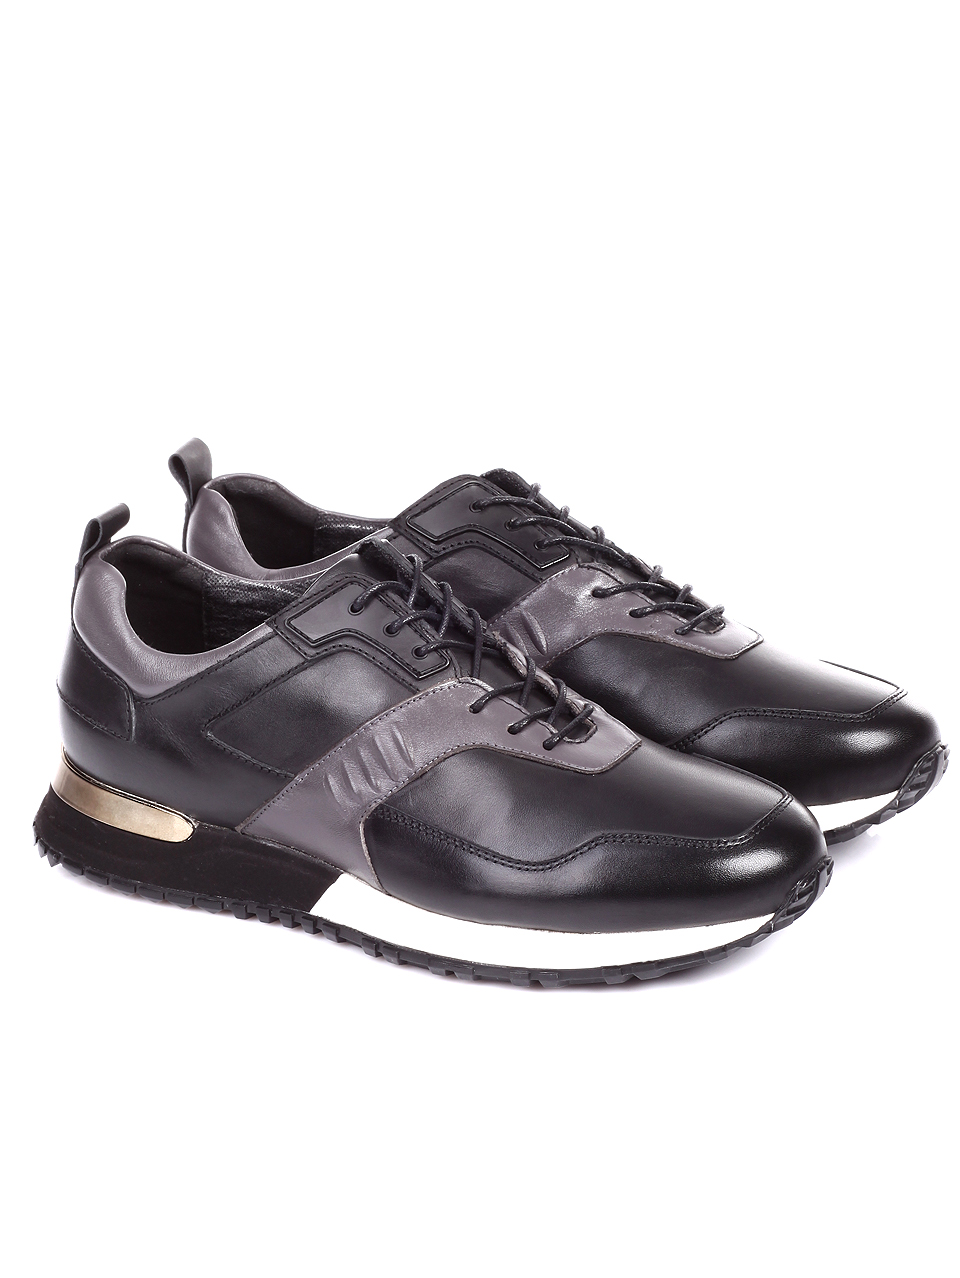 Ежедневни мъжки обувки от естествена кожа 7AB-19743 black/grey